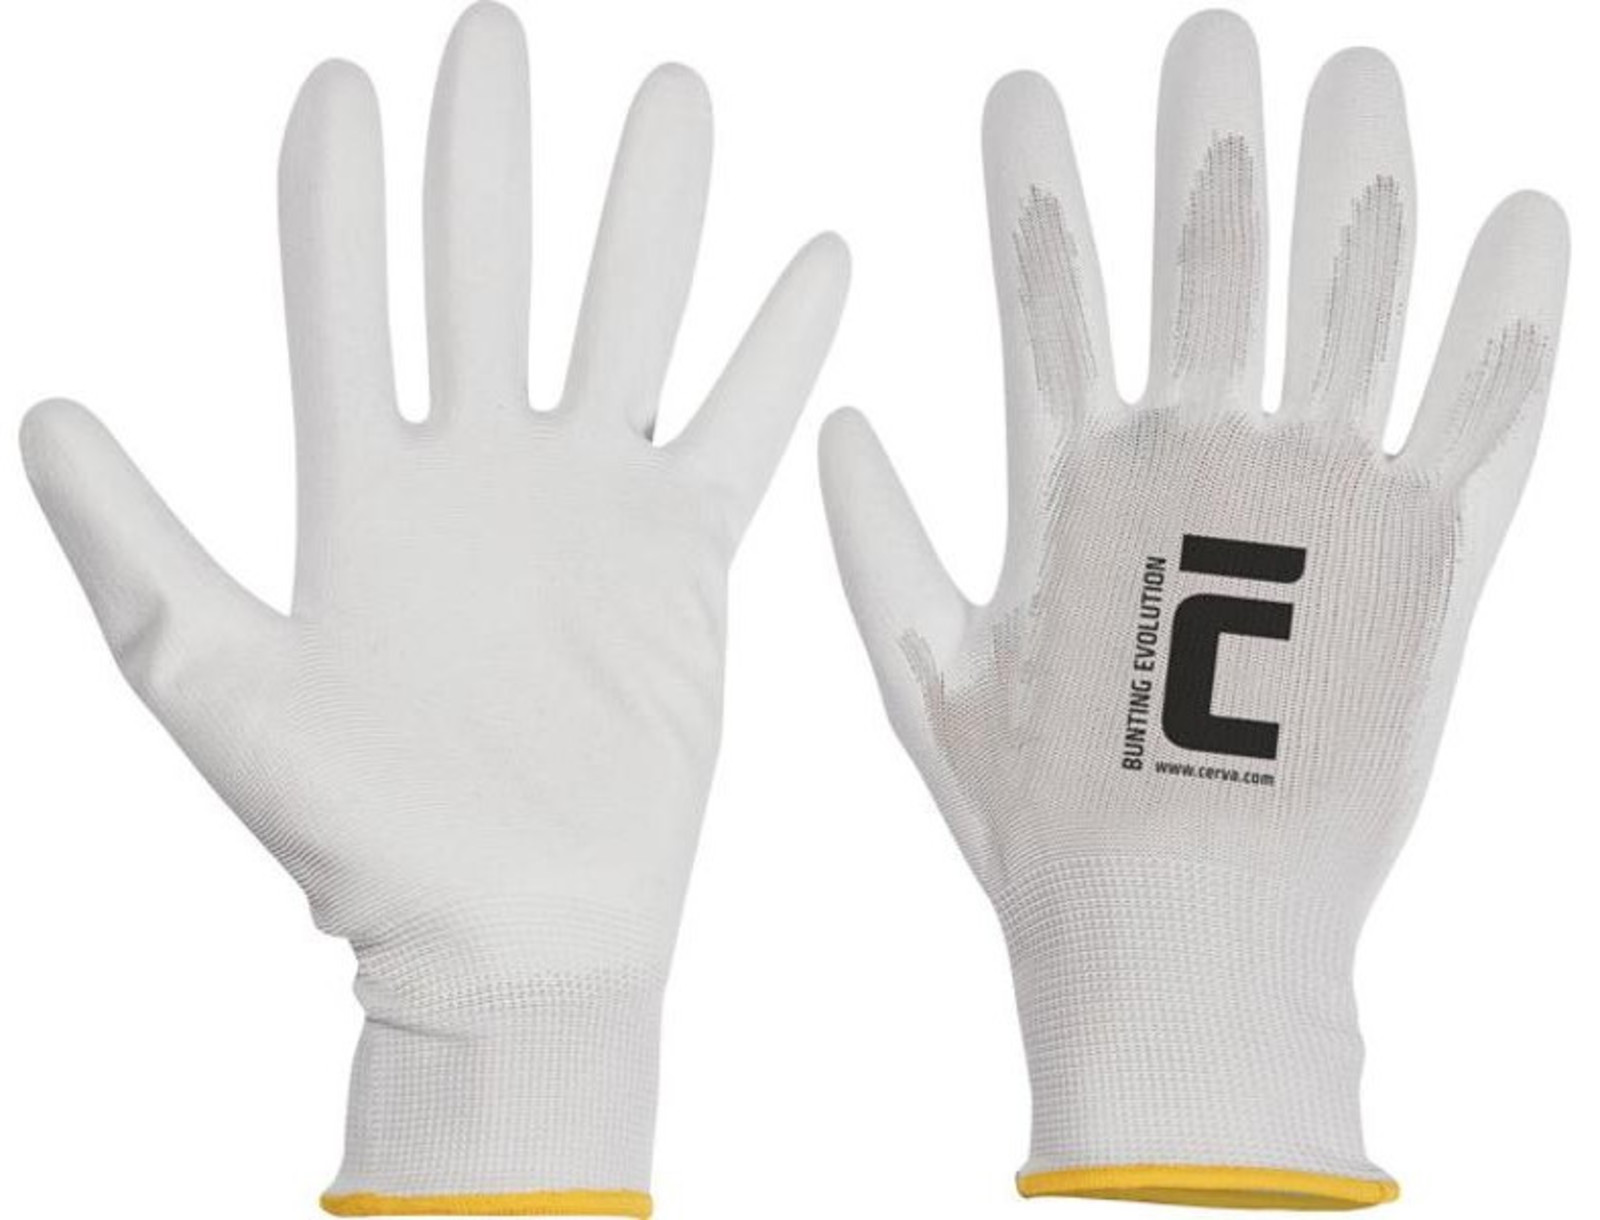 Polyesterové rukavice Bunting Evolution - veľkosť: 10/XL